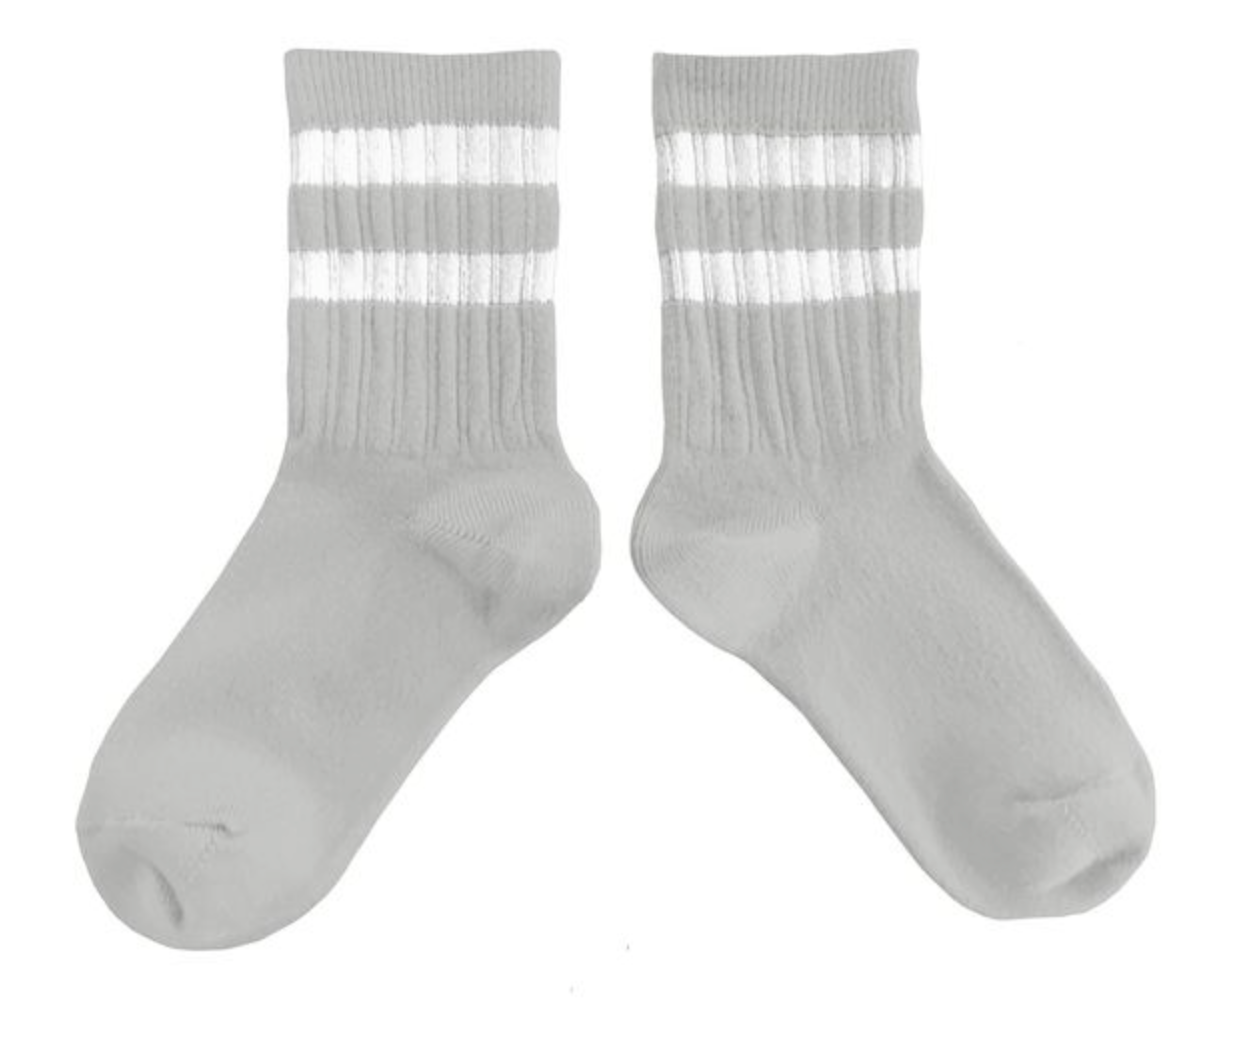 Socken 'Nico' in verschiedenen Farben